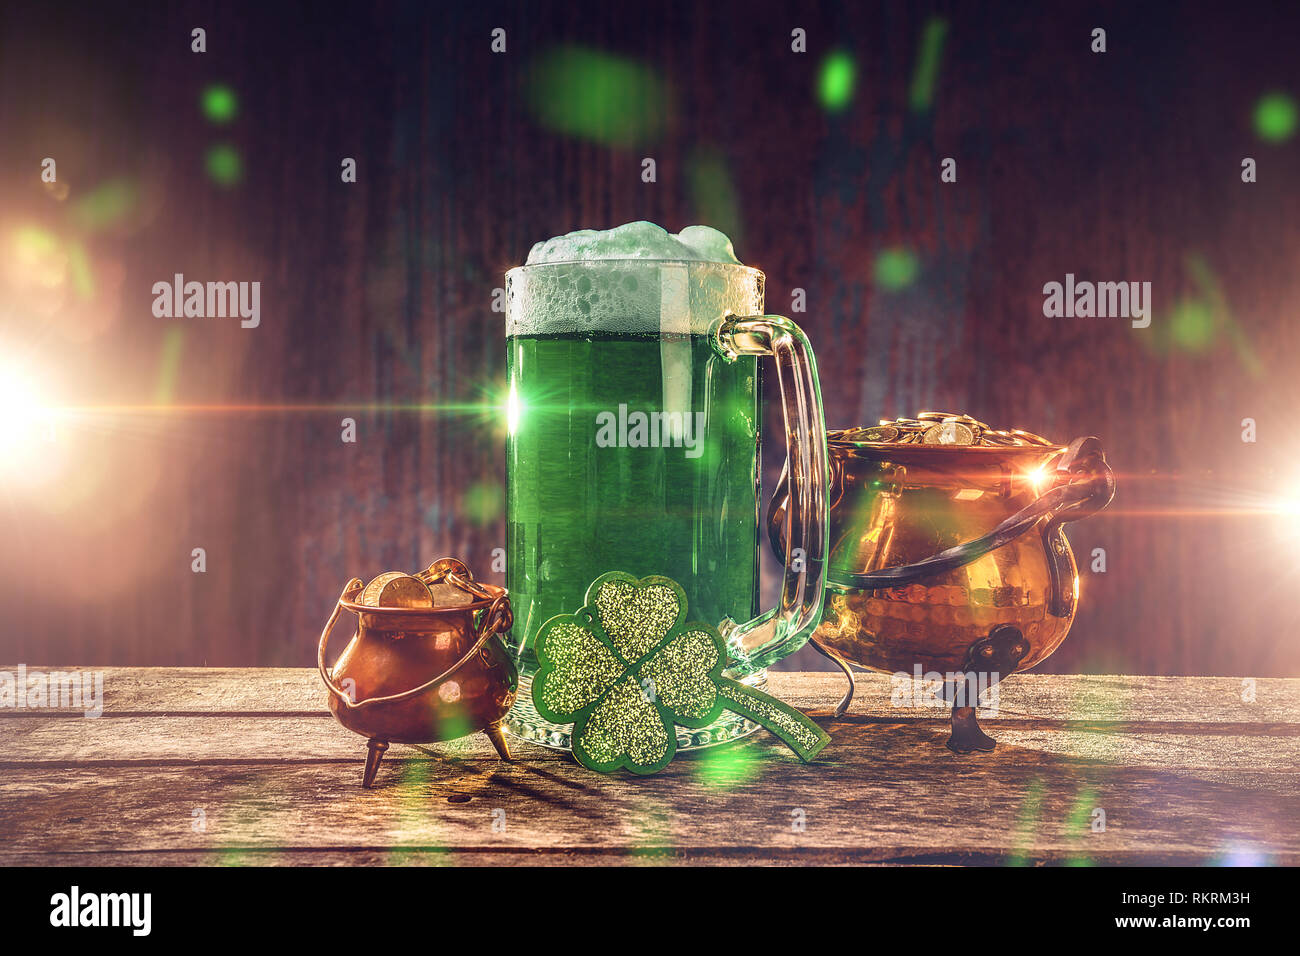 Hintergrund für den St. Patrick's Day mit einem Glas grün Bier, Goldmünzen und ein Shamrock auf einem Holztisch. Stockfoto